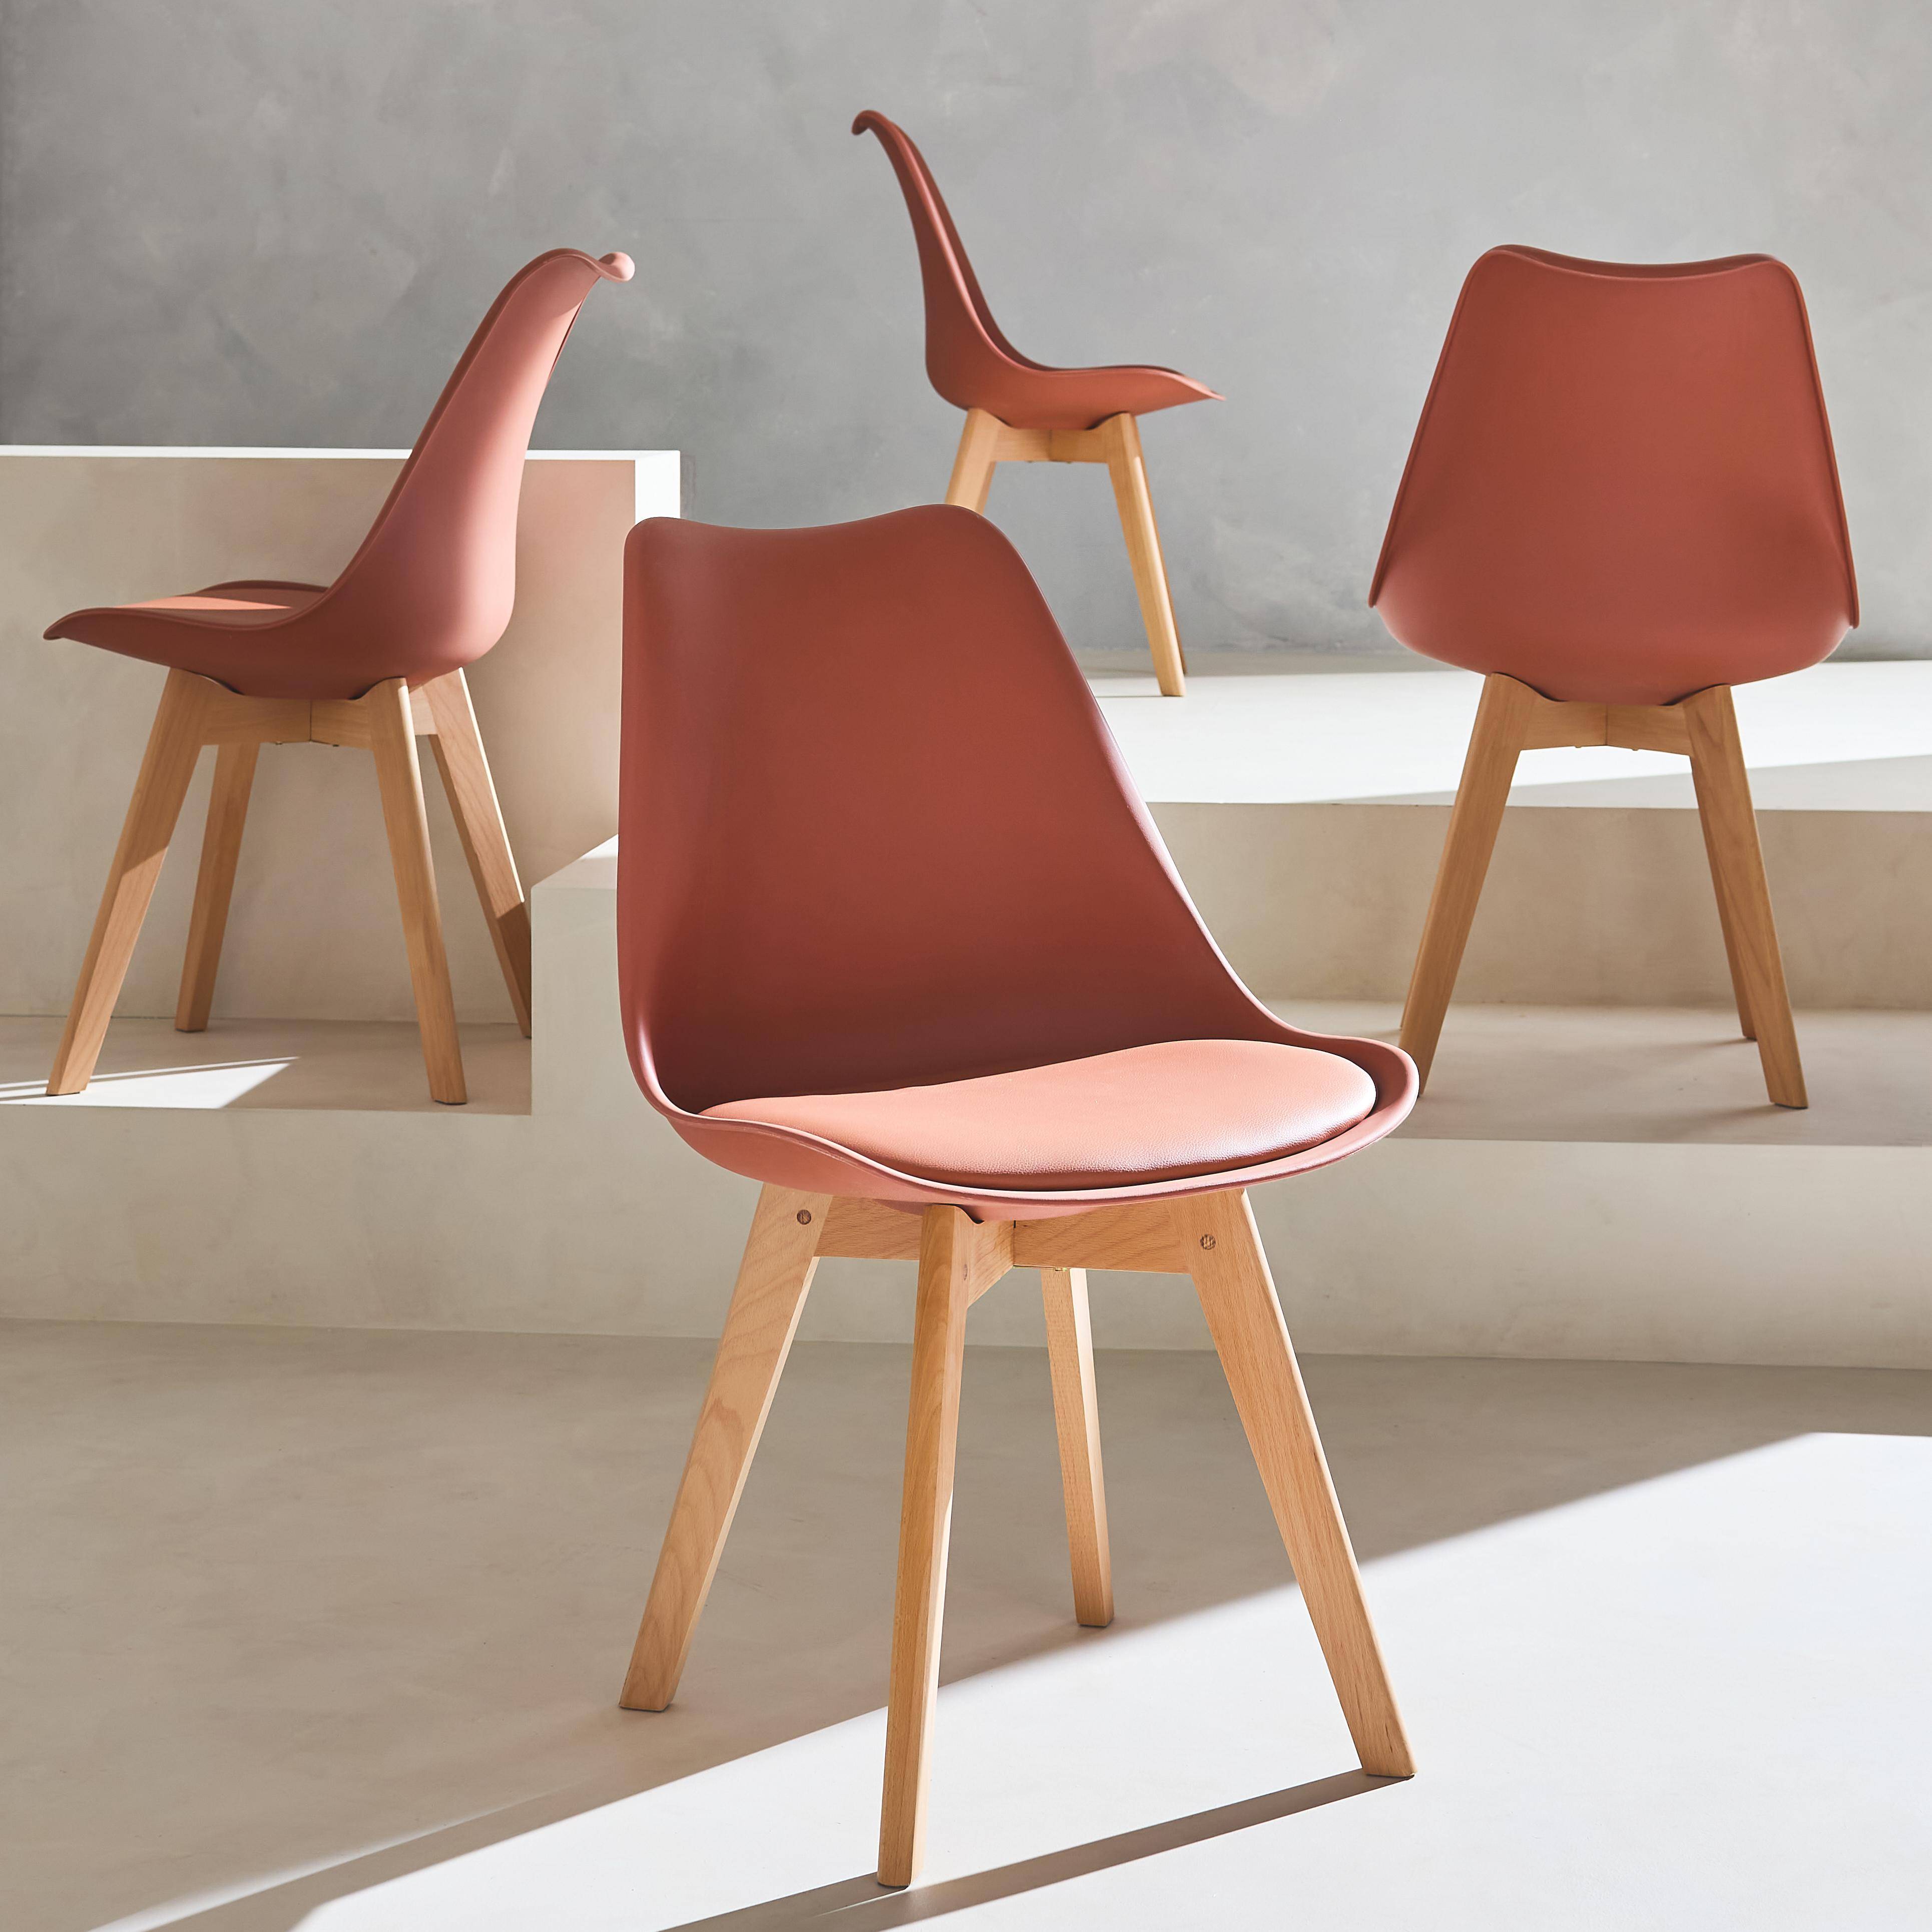 Conjunto de 4 sillas escandinavas, patas de madera de haya, asientos individuales, terracota,sweeek,Photo2